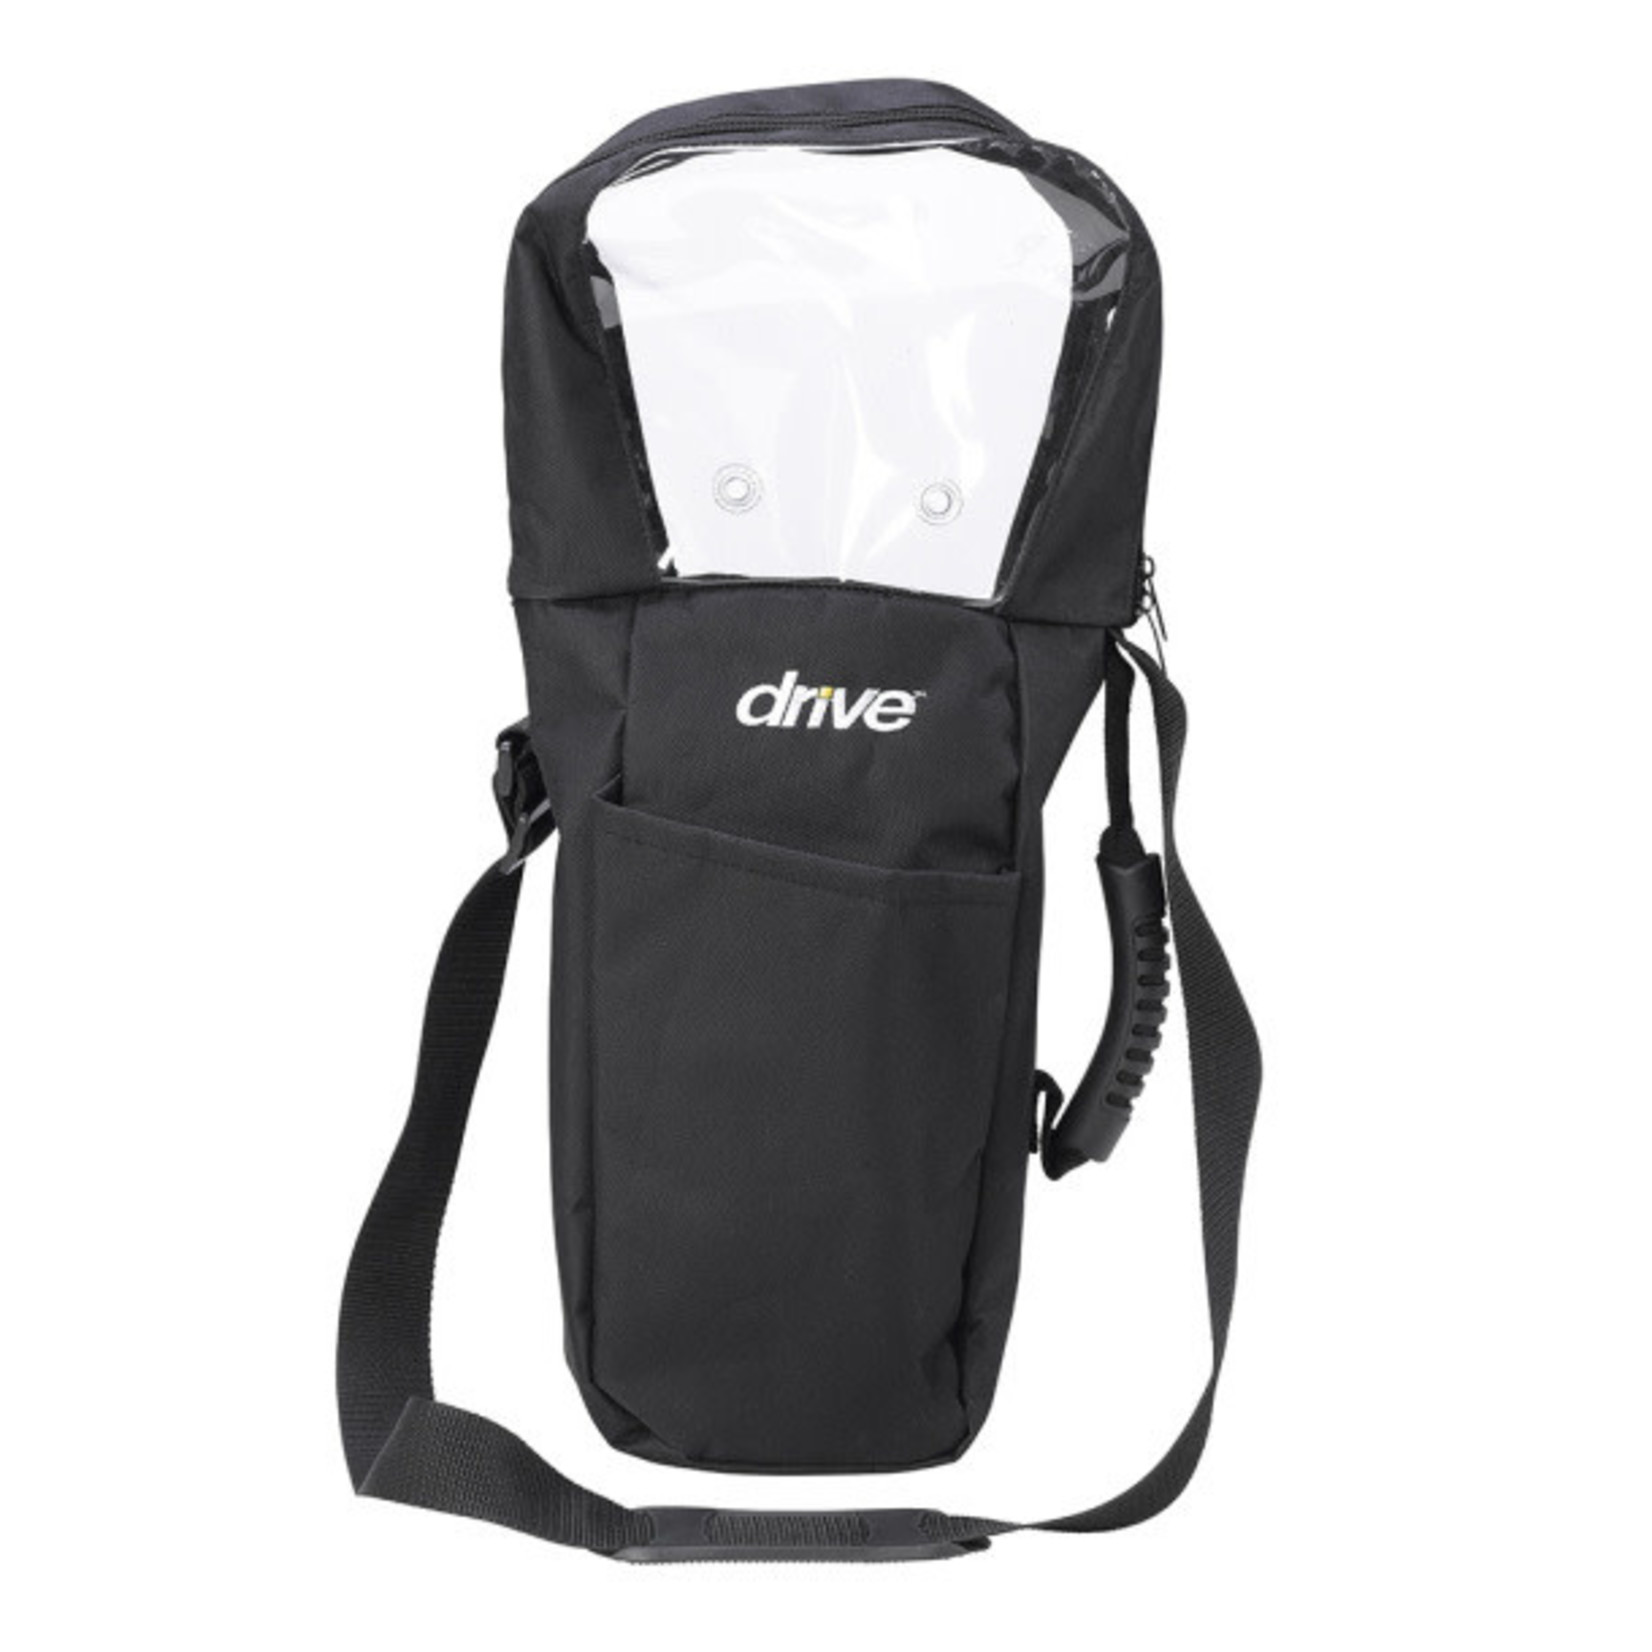 Drive Oxygen "D" Cylinder Shoulder Carry Bag